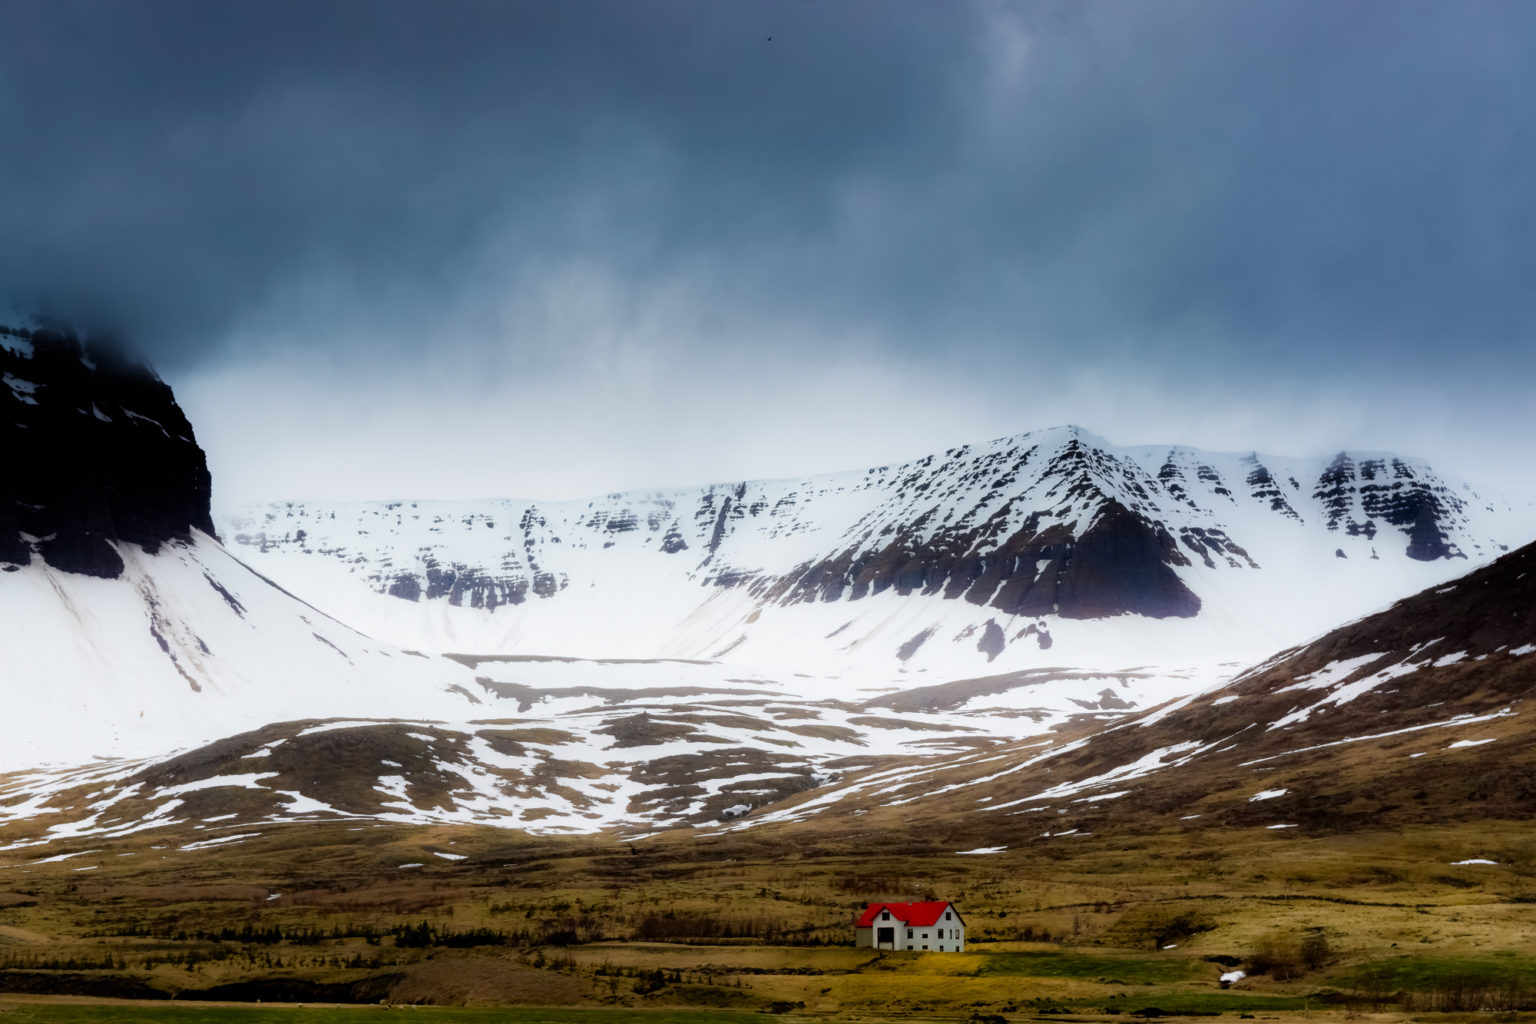 Somewhere around Flateyri, Iceland.